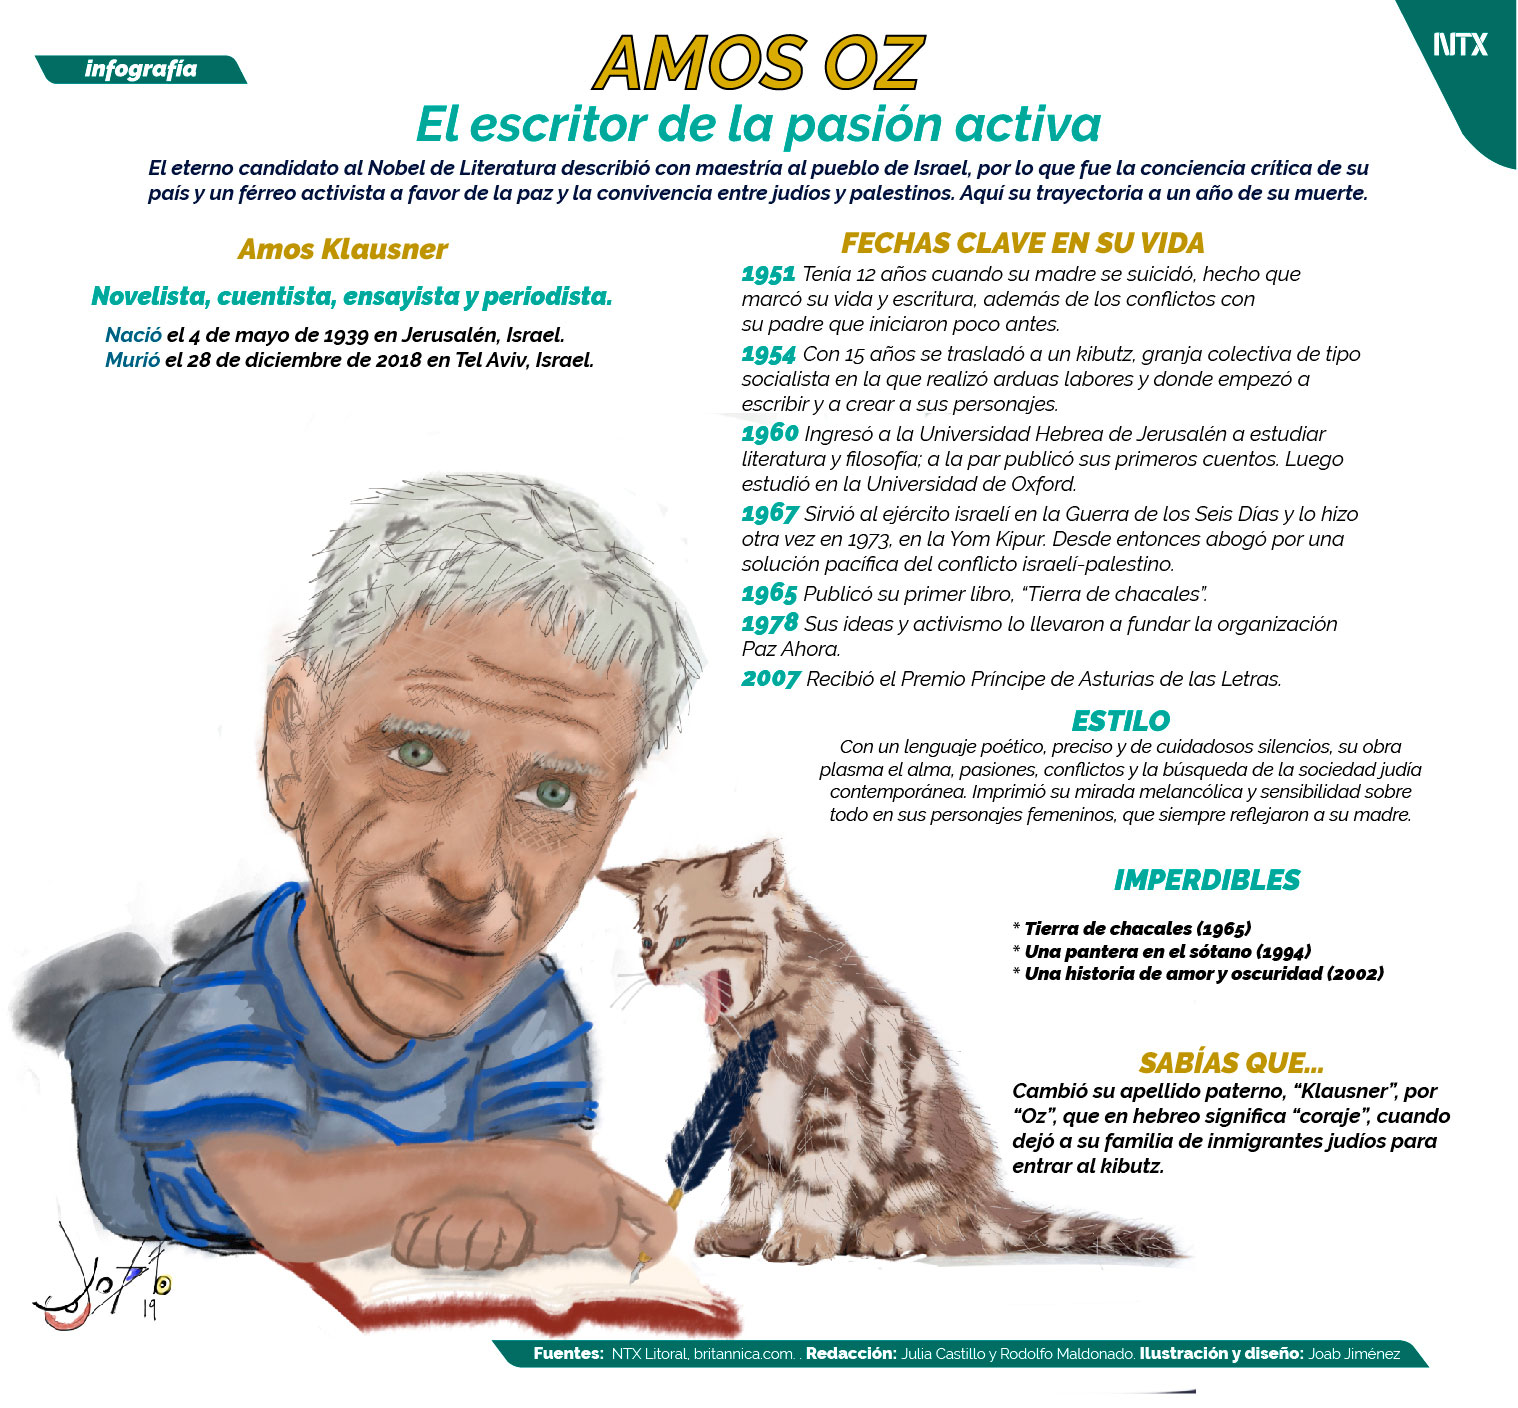 Amos OZ, el escritor de la pasión activa